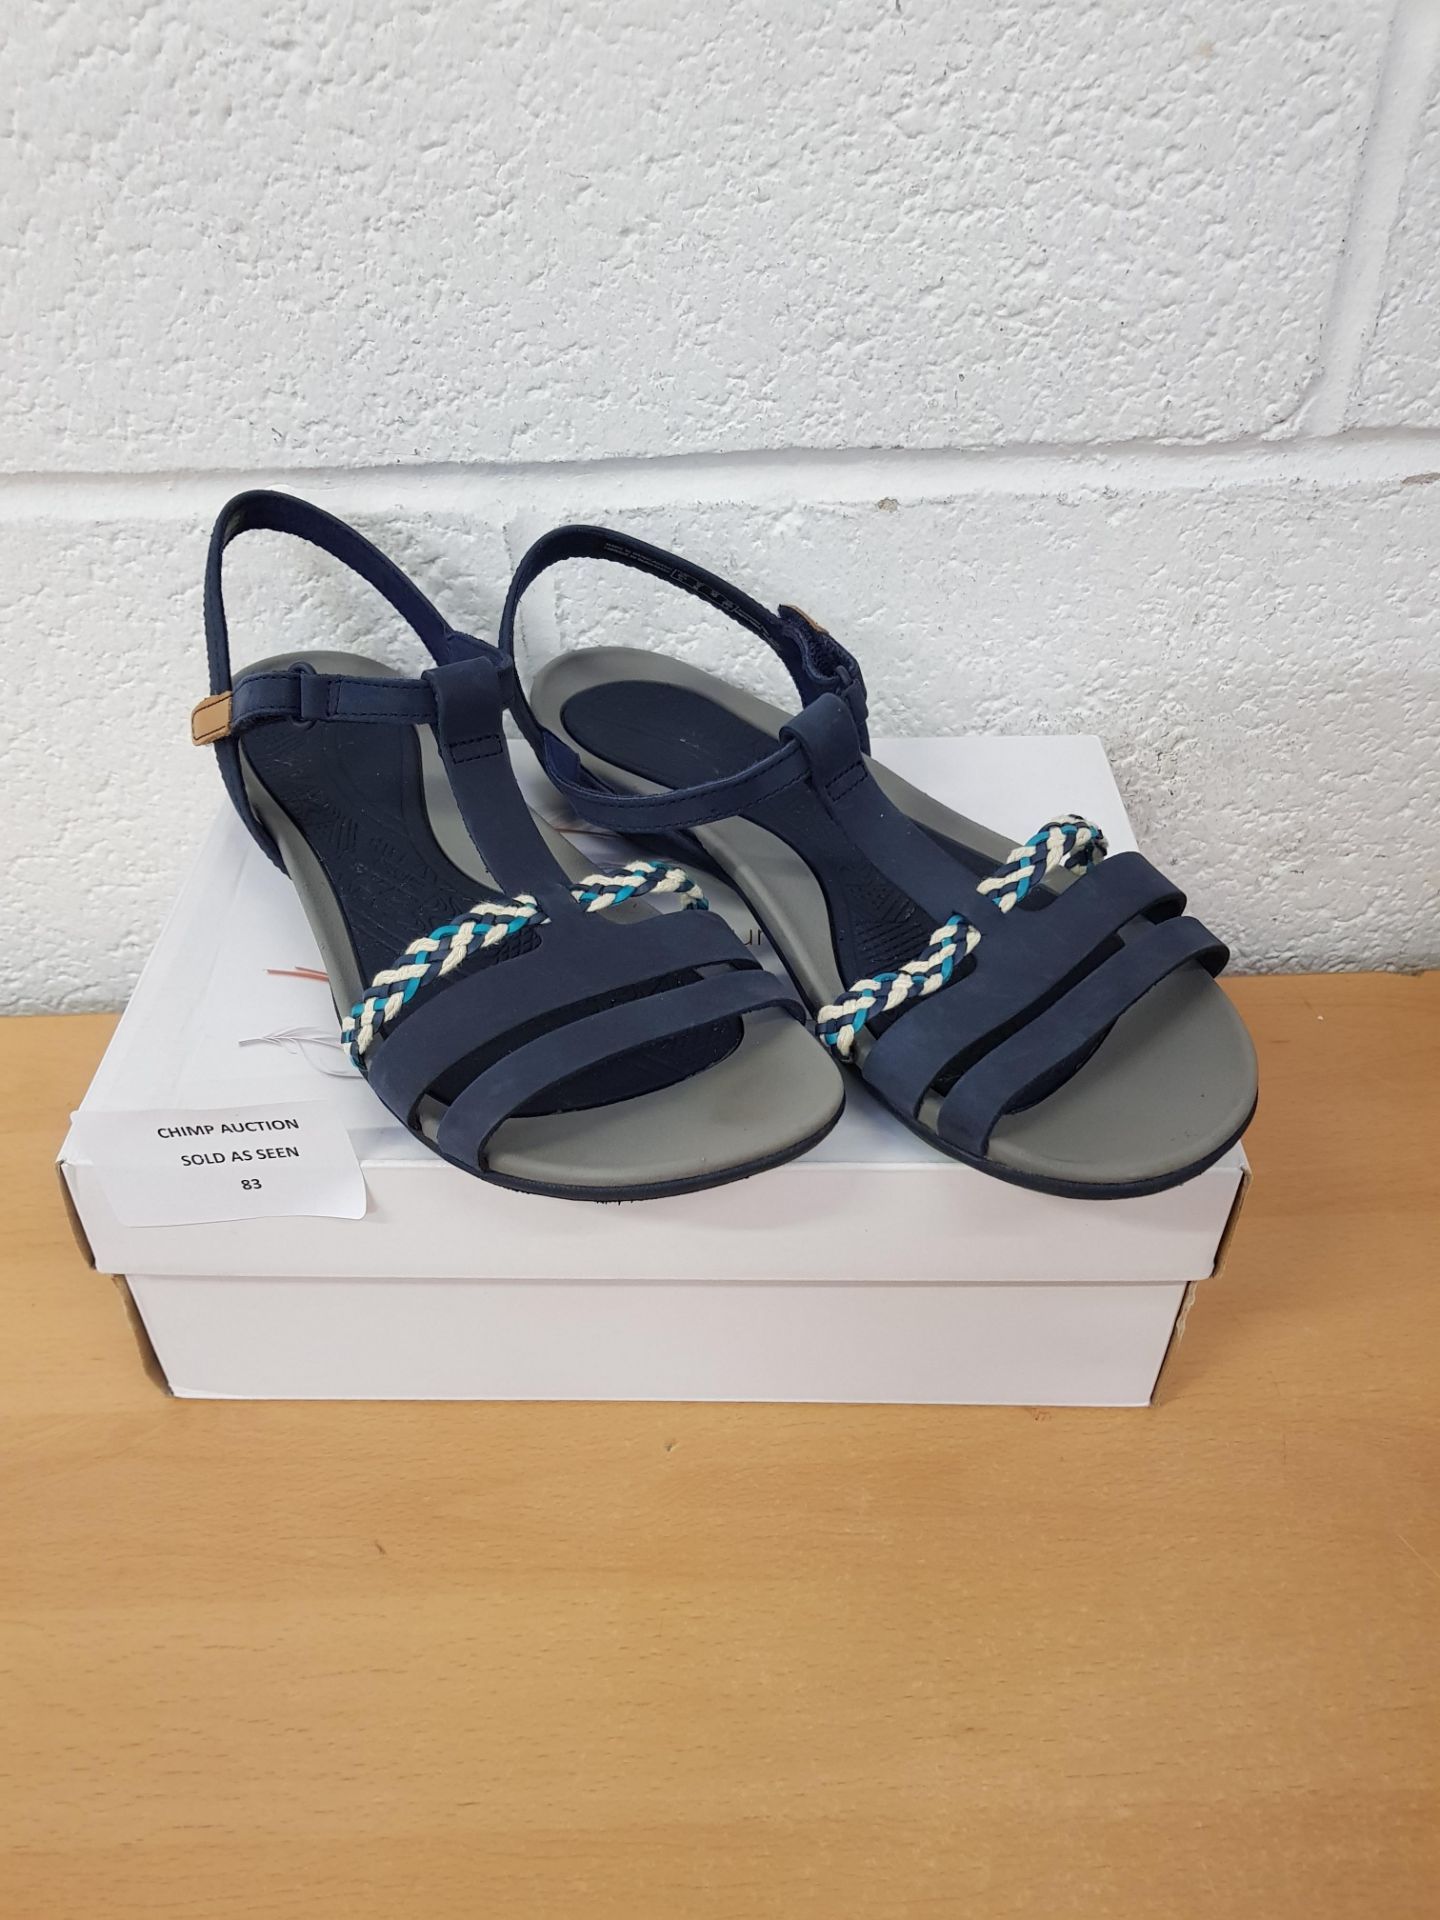 Clarks ladies sandals UK 6.5